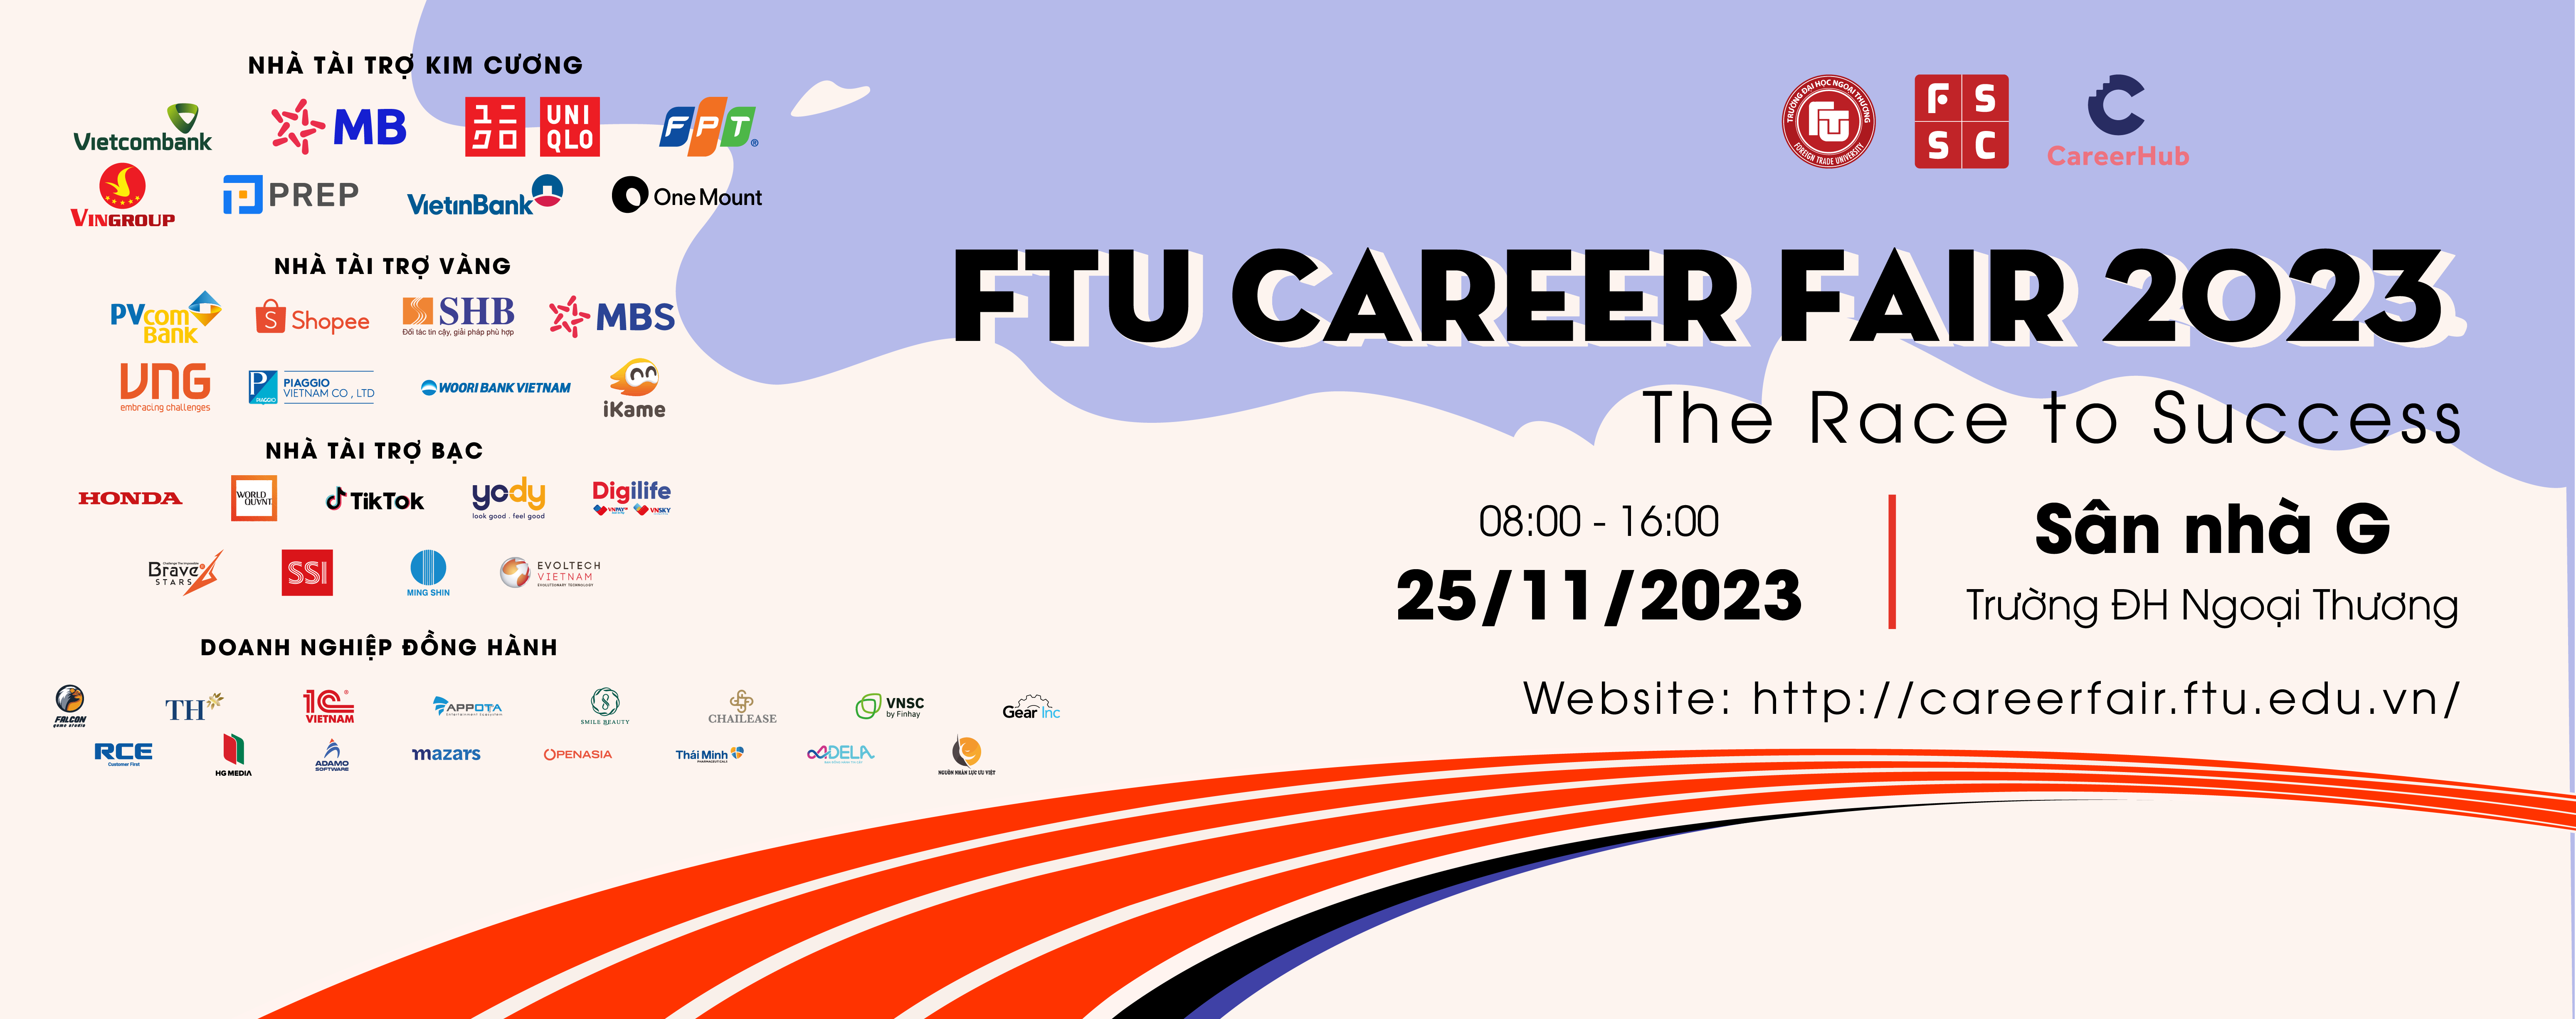 FTU Career Fair 2023 - The Race to success